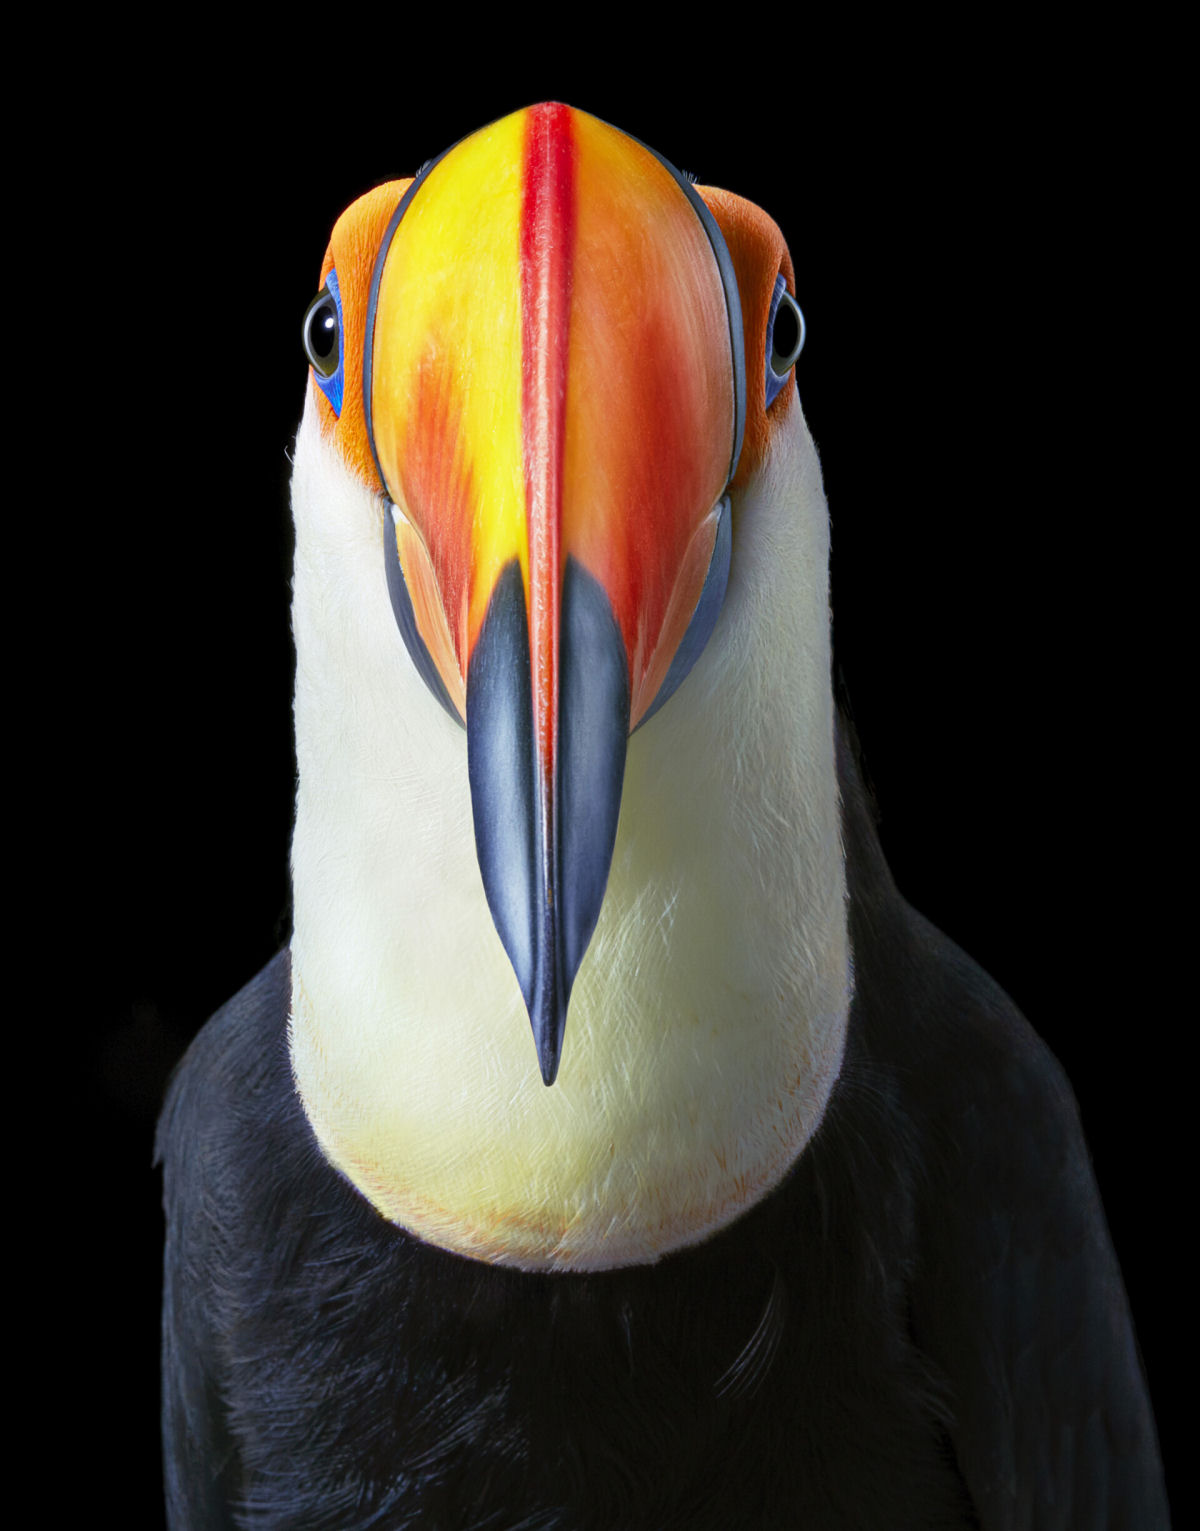 Fotógrafo londrino continua emoldurando pássaros ameaçados de extinção em retratos impressionantes 04